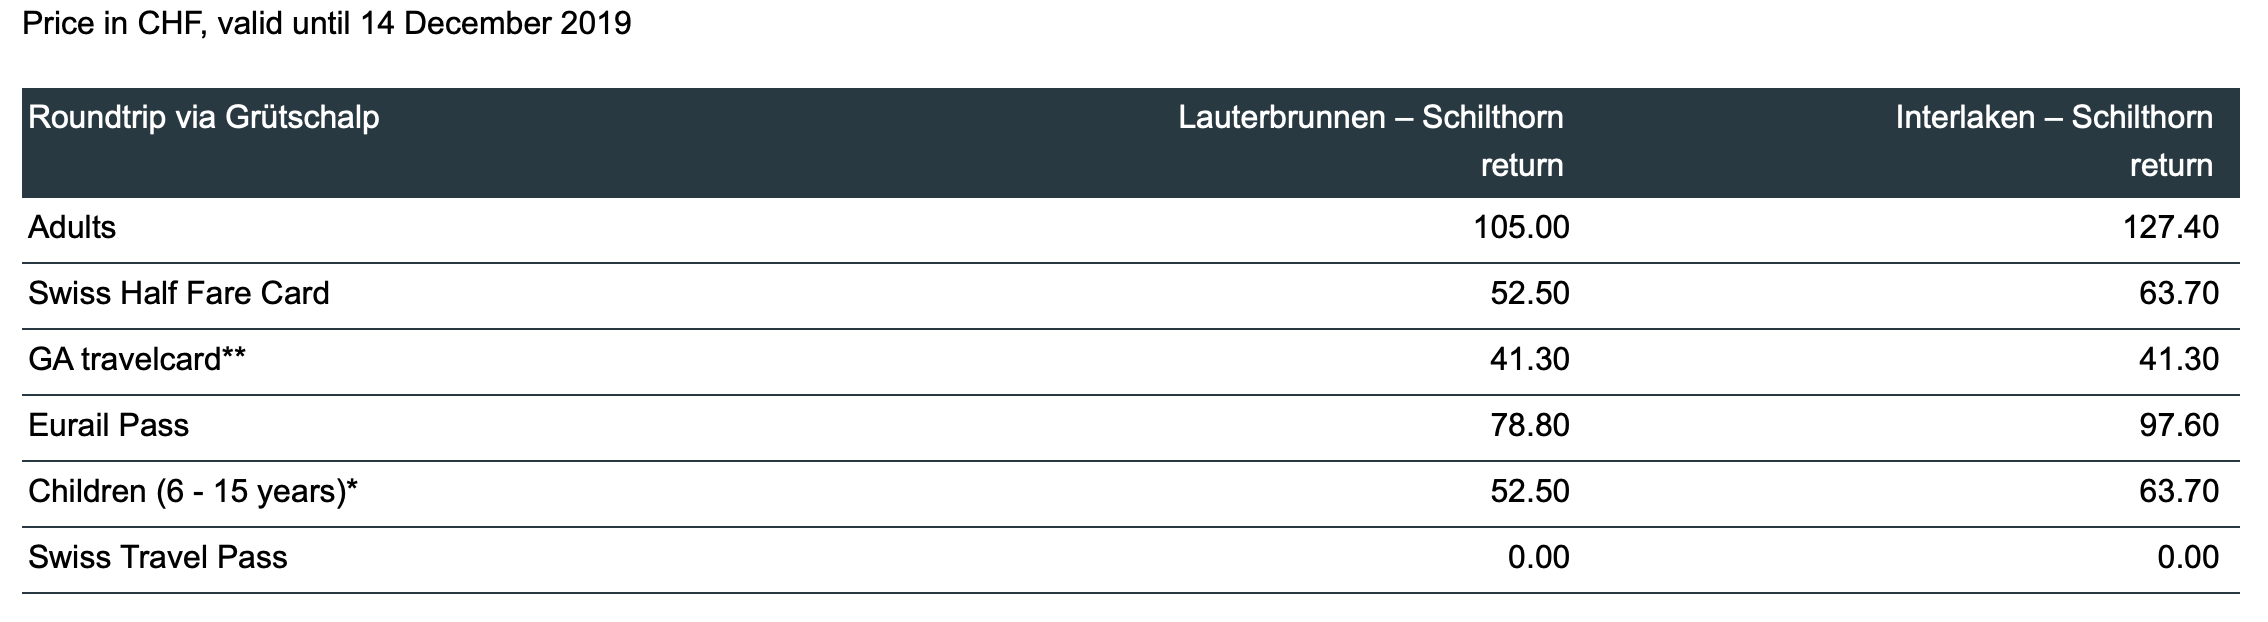 tabela de preços para Mount Schilthorn no inverno na suíça